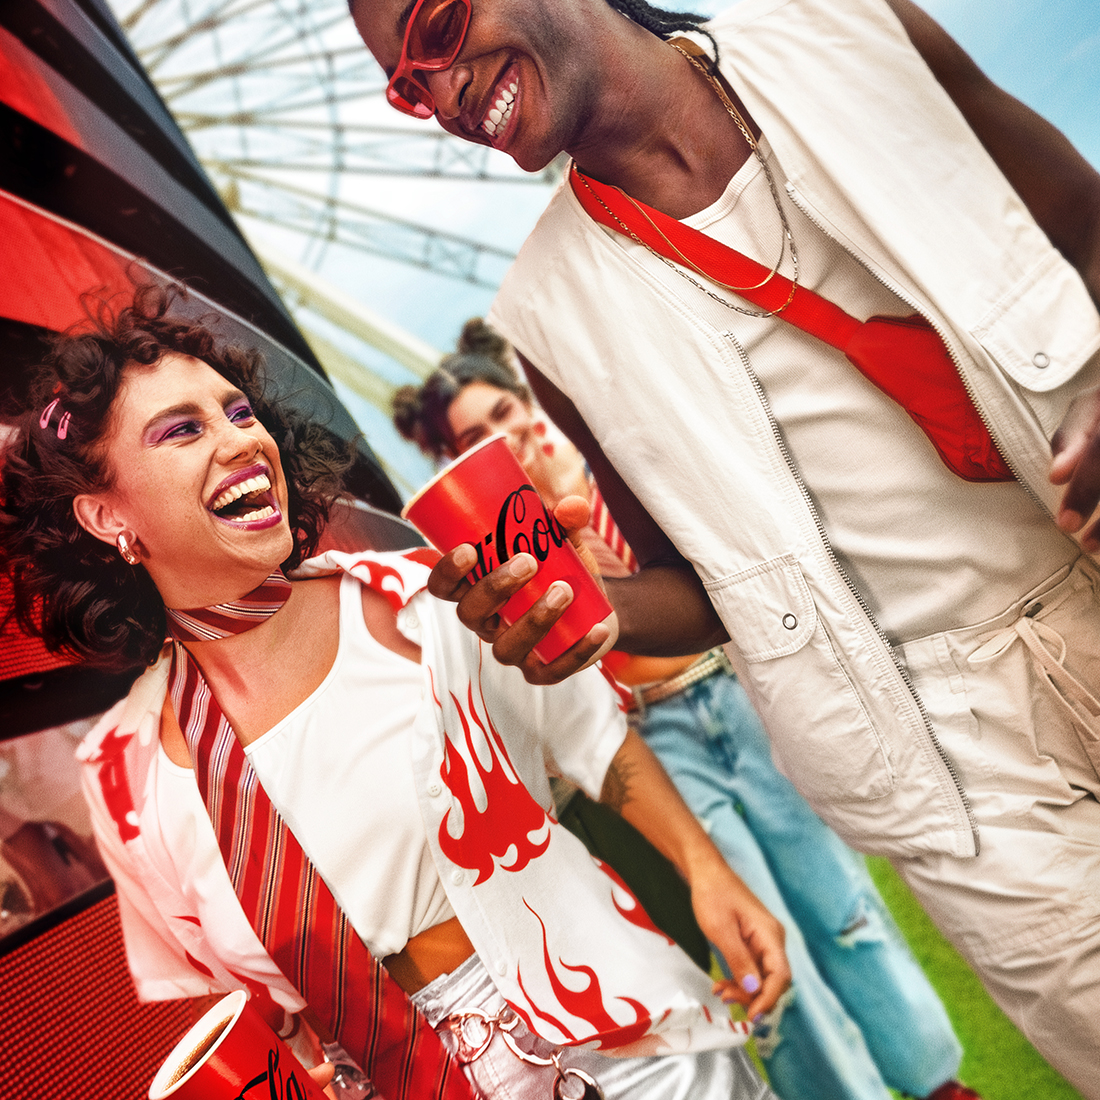  Dos personas disfrutando de una Coca-Cola, sonriendo y riendo. Una persona tiene el pelo rizado con accesorios rosados y lleva una bufanda a rayas, mientras que la otra persona tiene trenzas, usa gafas de sol, un chaleco blanco y una bolsa cruzada roja. Líneas gráficas rojas mejoran el ambiente festivo.​